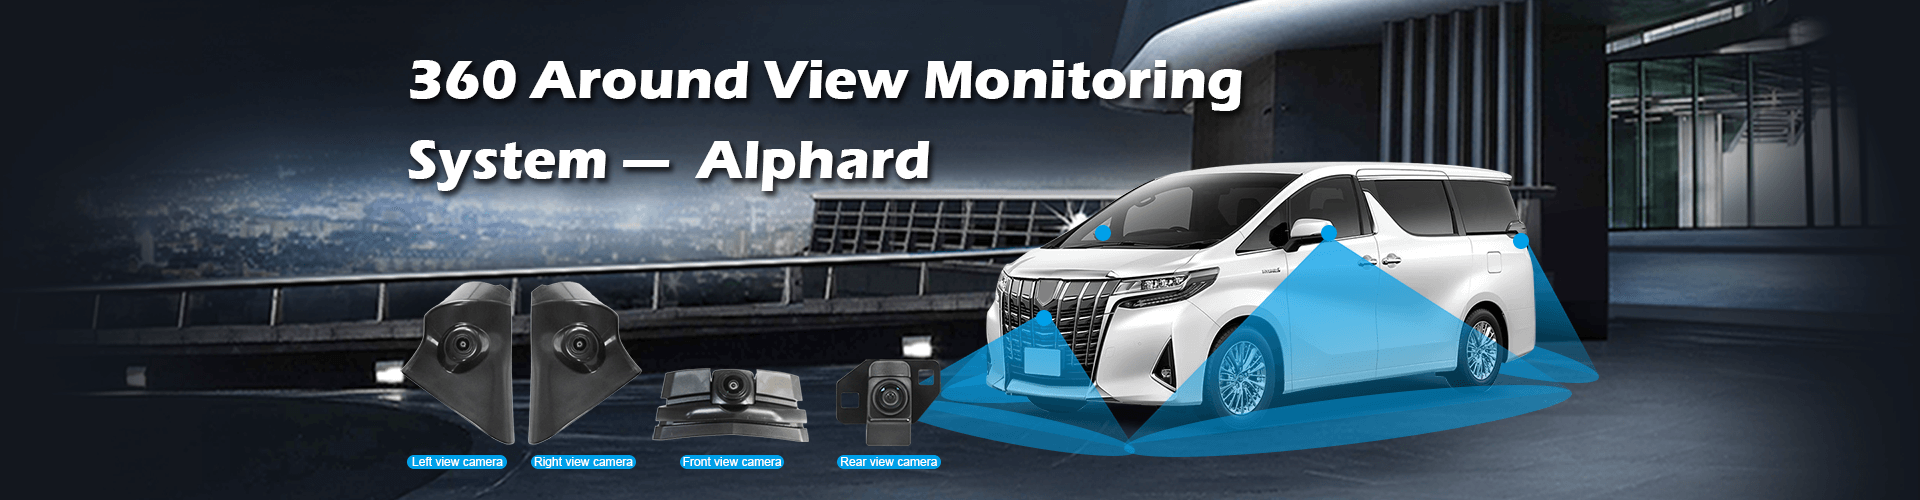 360 система мониторинга обзора вокруг для конкретного транспортного средства Alphard